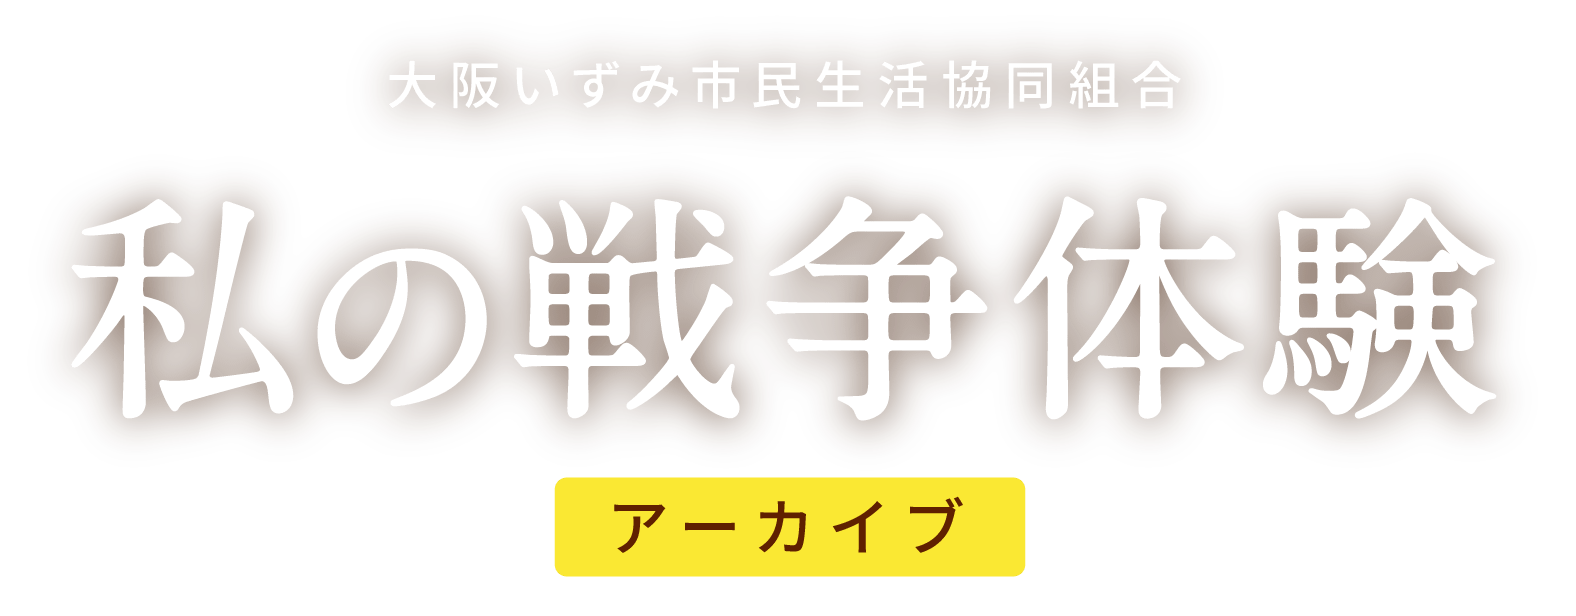 私の戦争体験アーカイブ - 大阪いずみ市民生活協同組合